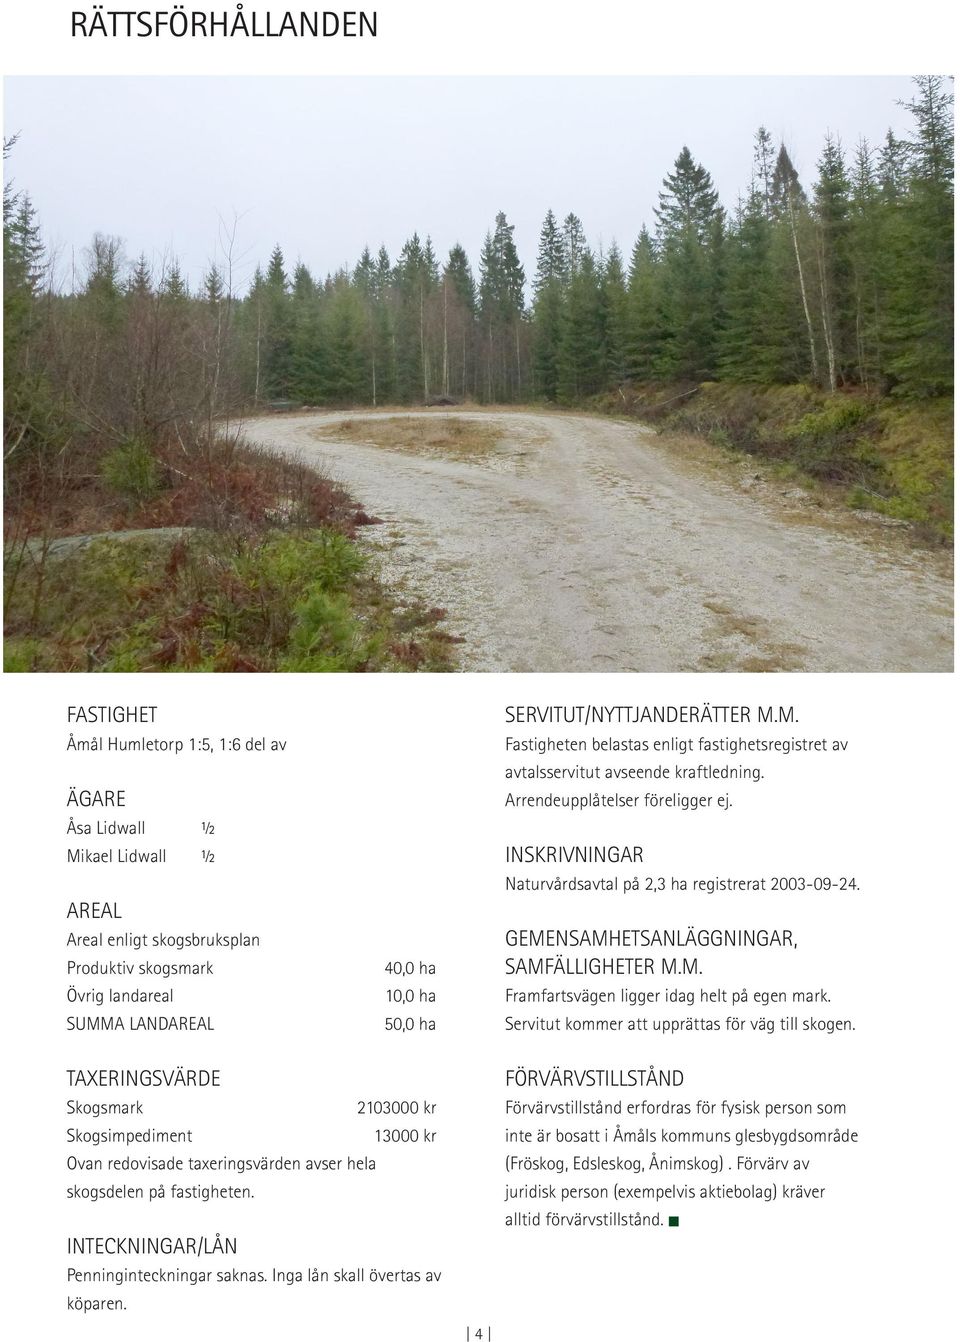 INSKRIVNINGAR Naturvårdsavtal på 2,3 ha registrerat 2003-09-24. GEMENSAMHETSANLÄGGNINGAR, SAMFÄLLIGHETER M.M. Framfartsvägen ligger idag helt på egen mark.